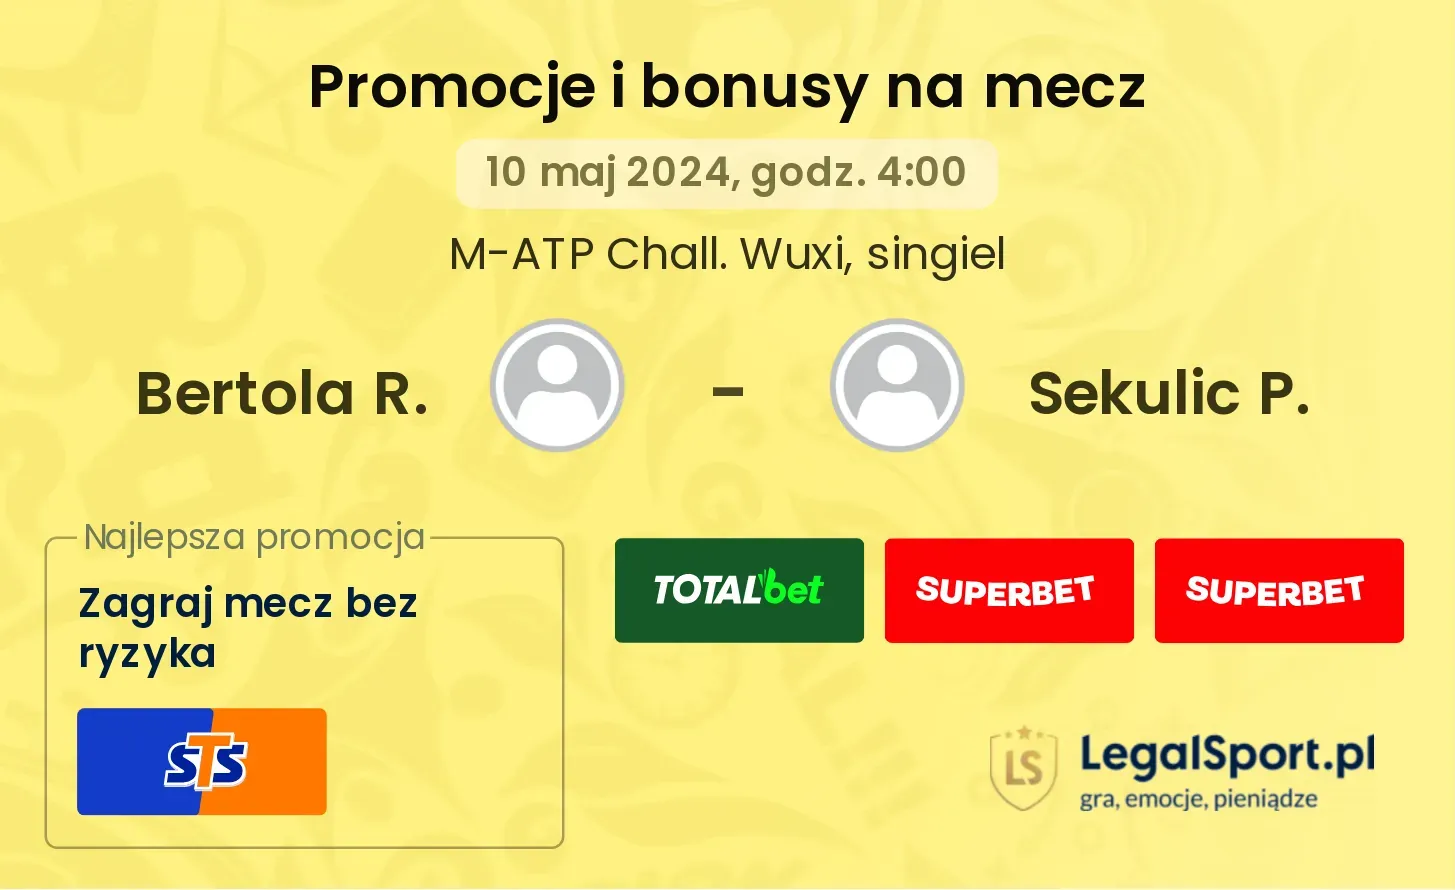 Bertola R. - Sekulic P. promocje bonusy na mecz